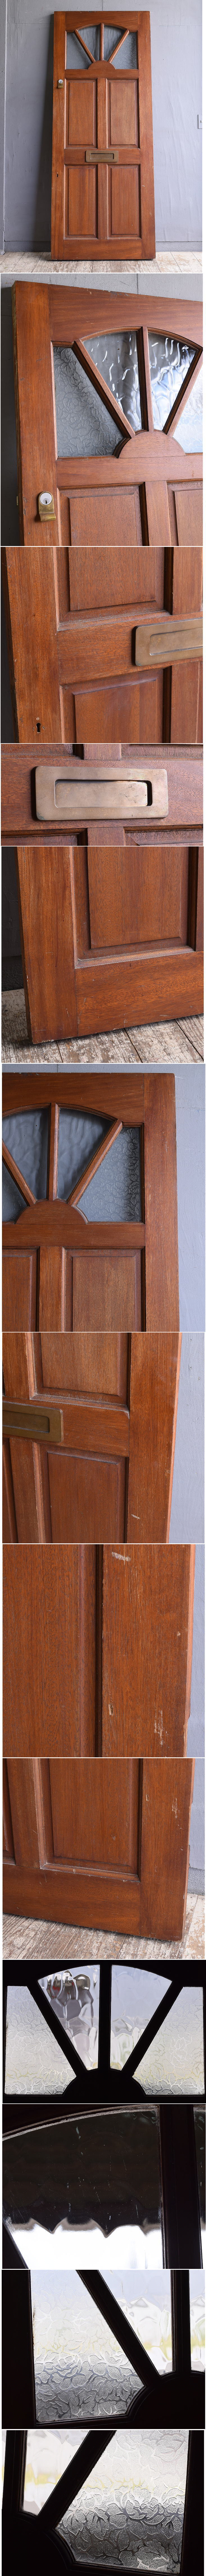 イギリス アンティーク 木製ドア 扉 建具 11844